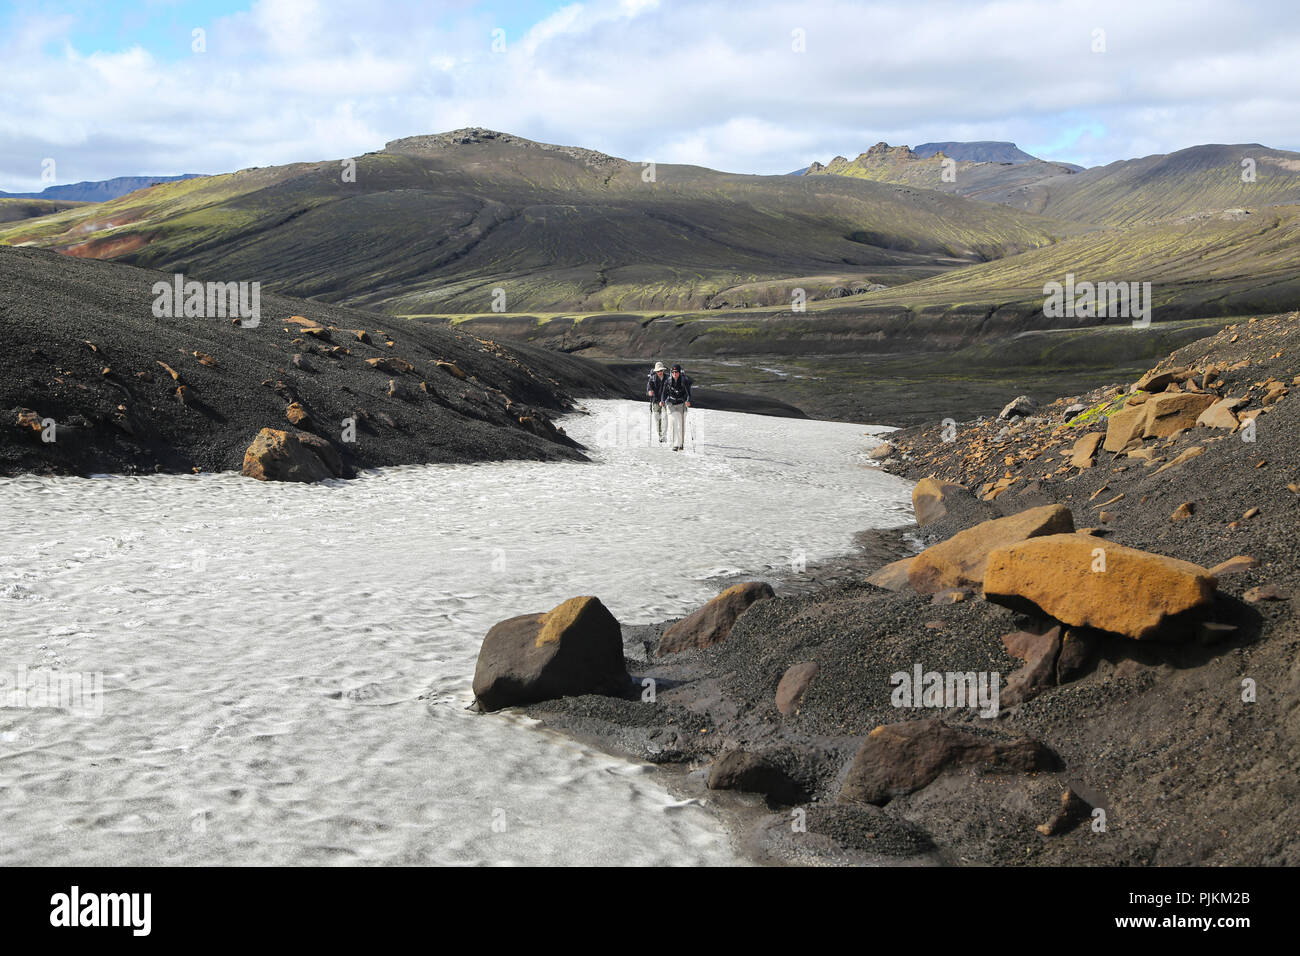 L'Islande, deux randonneurs sur un champ de neige dans le désert de lave, montagnes en arrière-plan, de sable noir et des pierres orange Banque D'Images